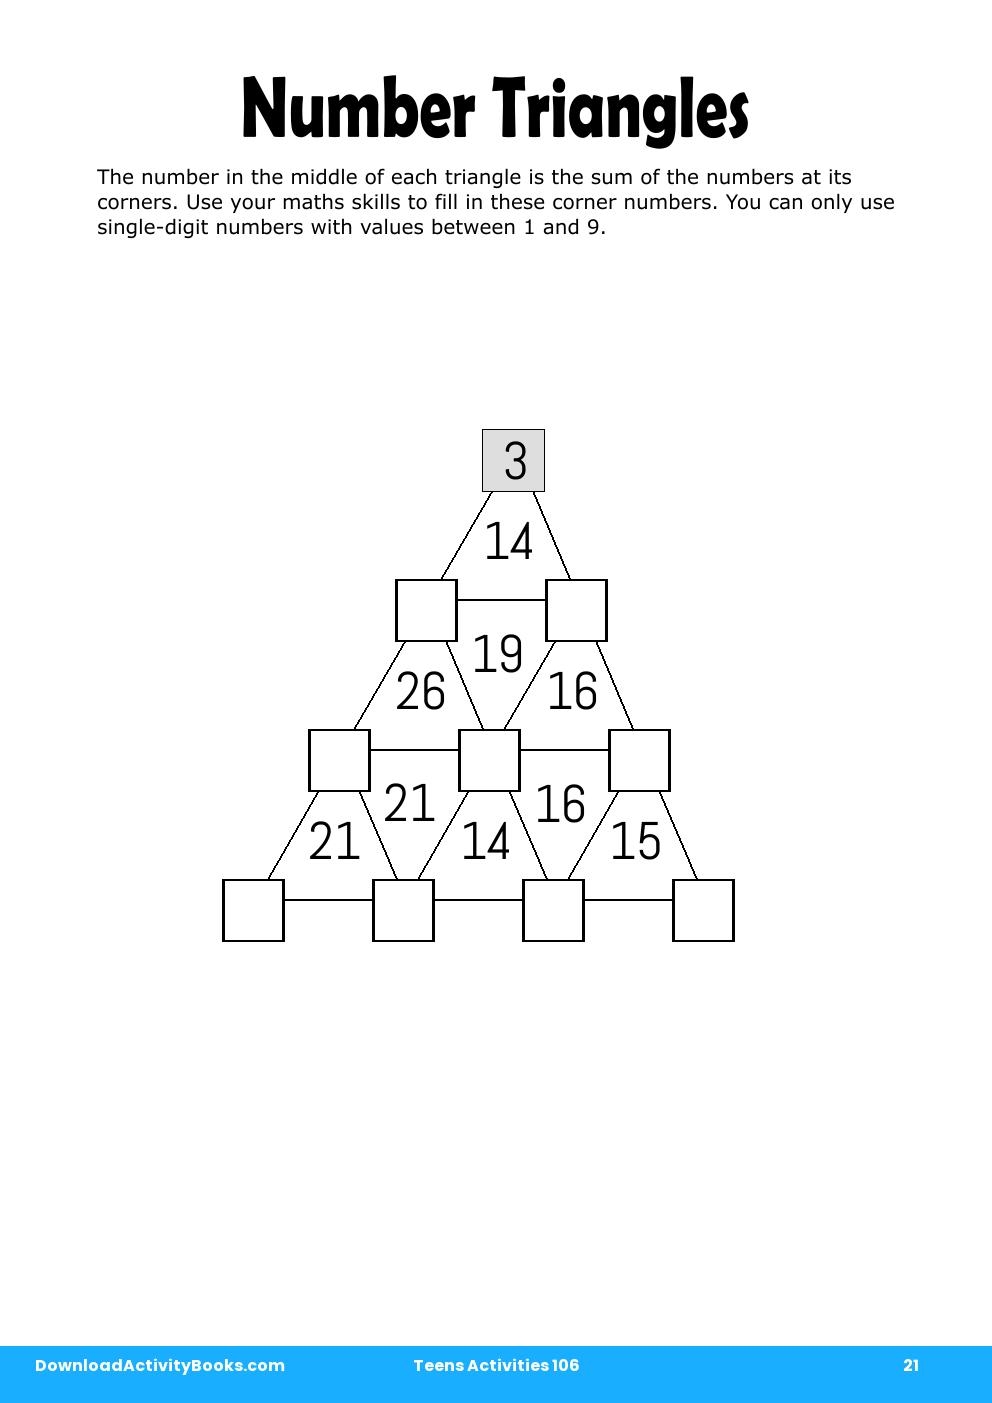 Number Triangles in Teens Activities 106